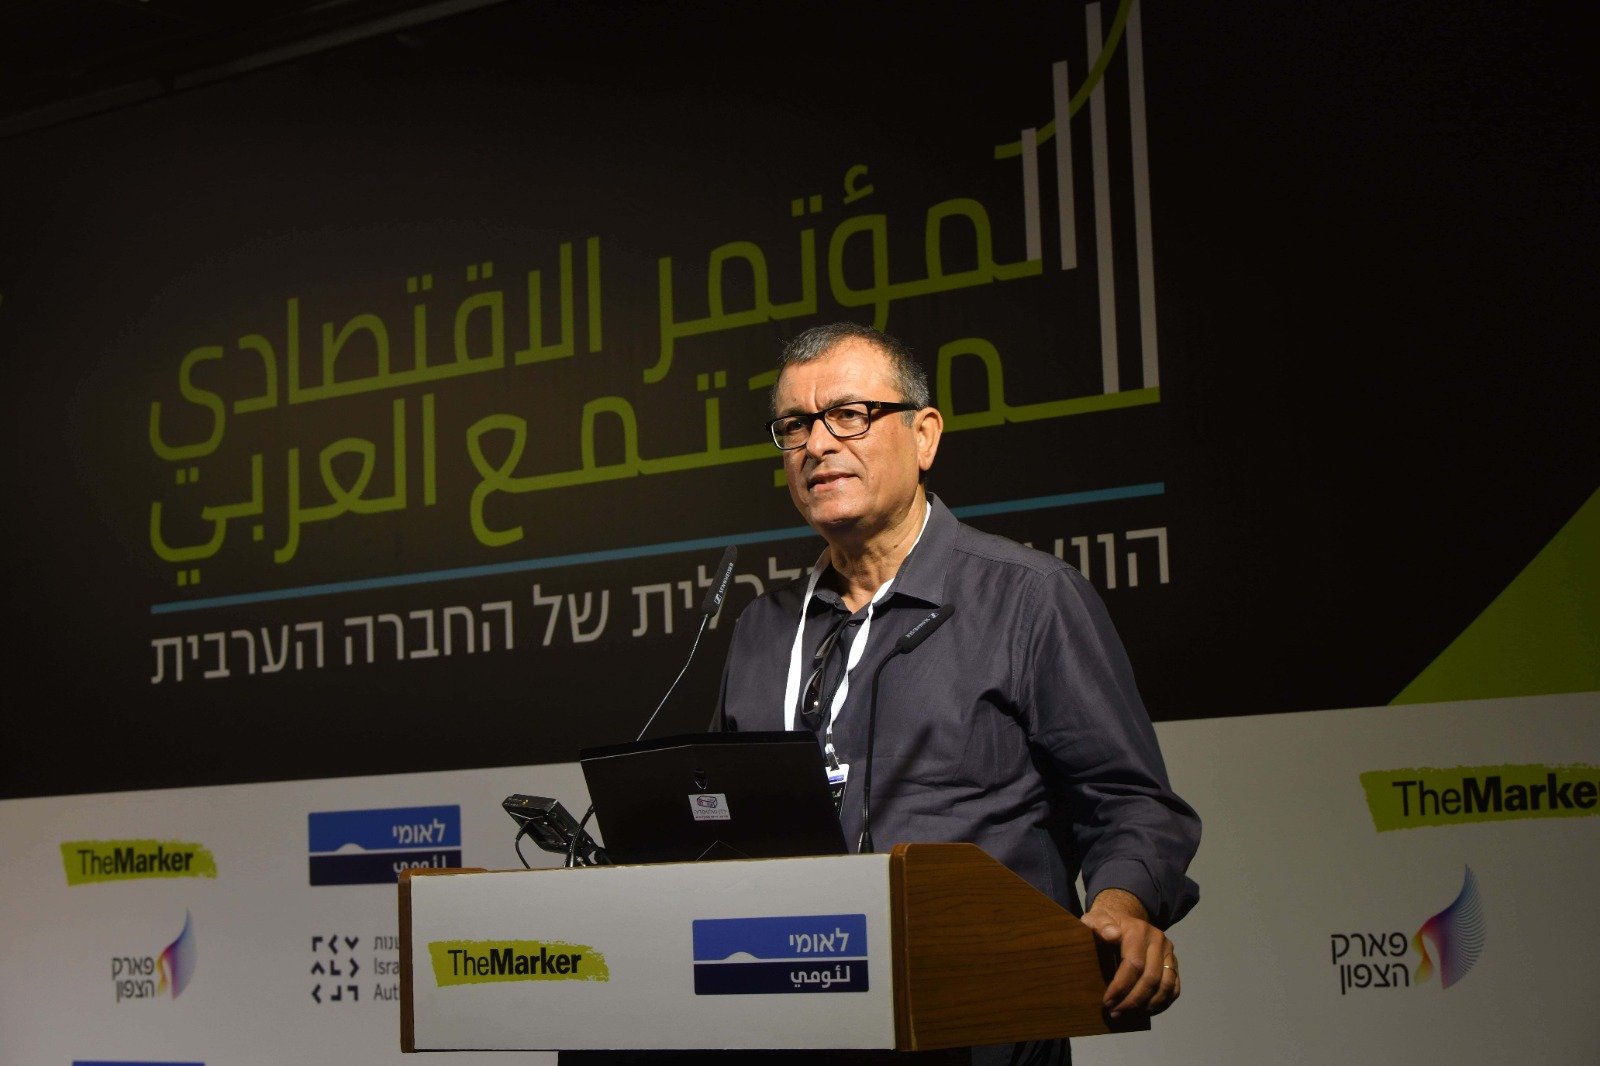 المؤتمر الاقتصادي للمجتمع العربي "بنك لئومي" بنسخته الخامسة يحقق نجاحًا لافتًا-4